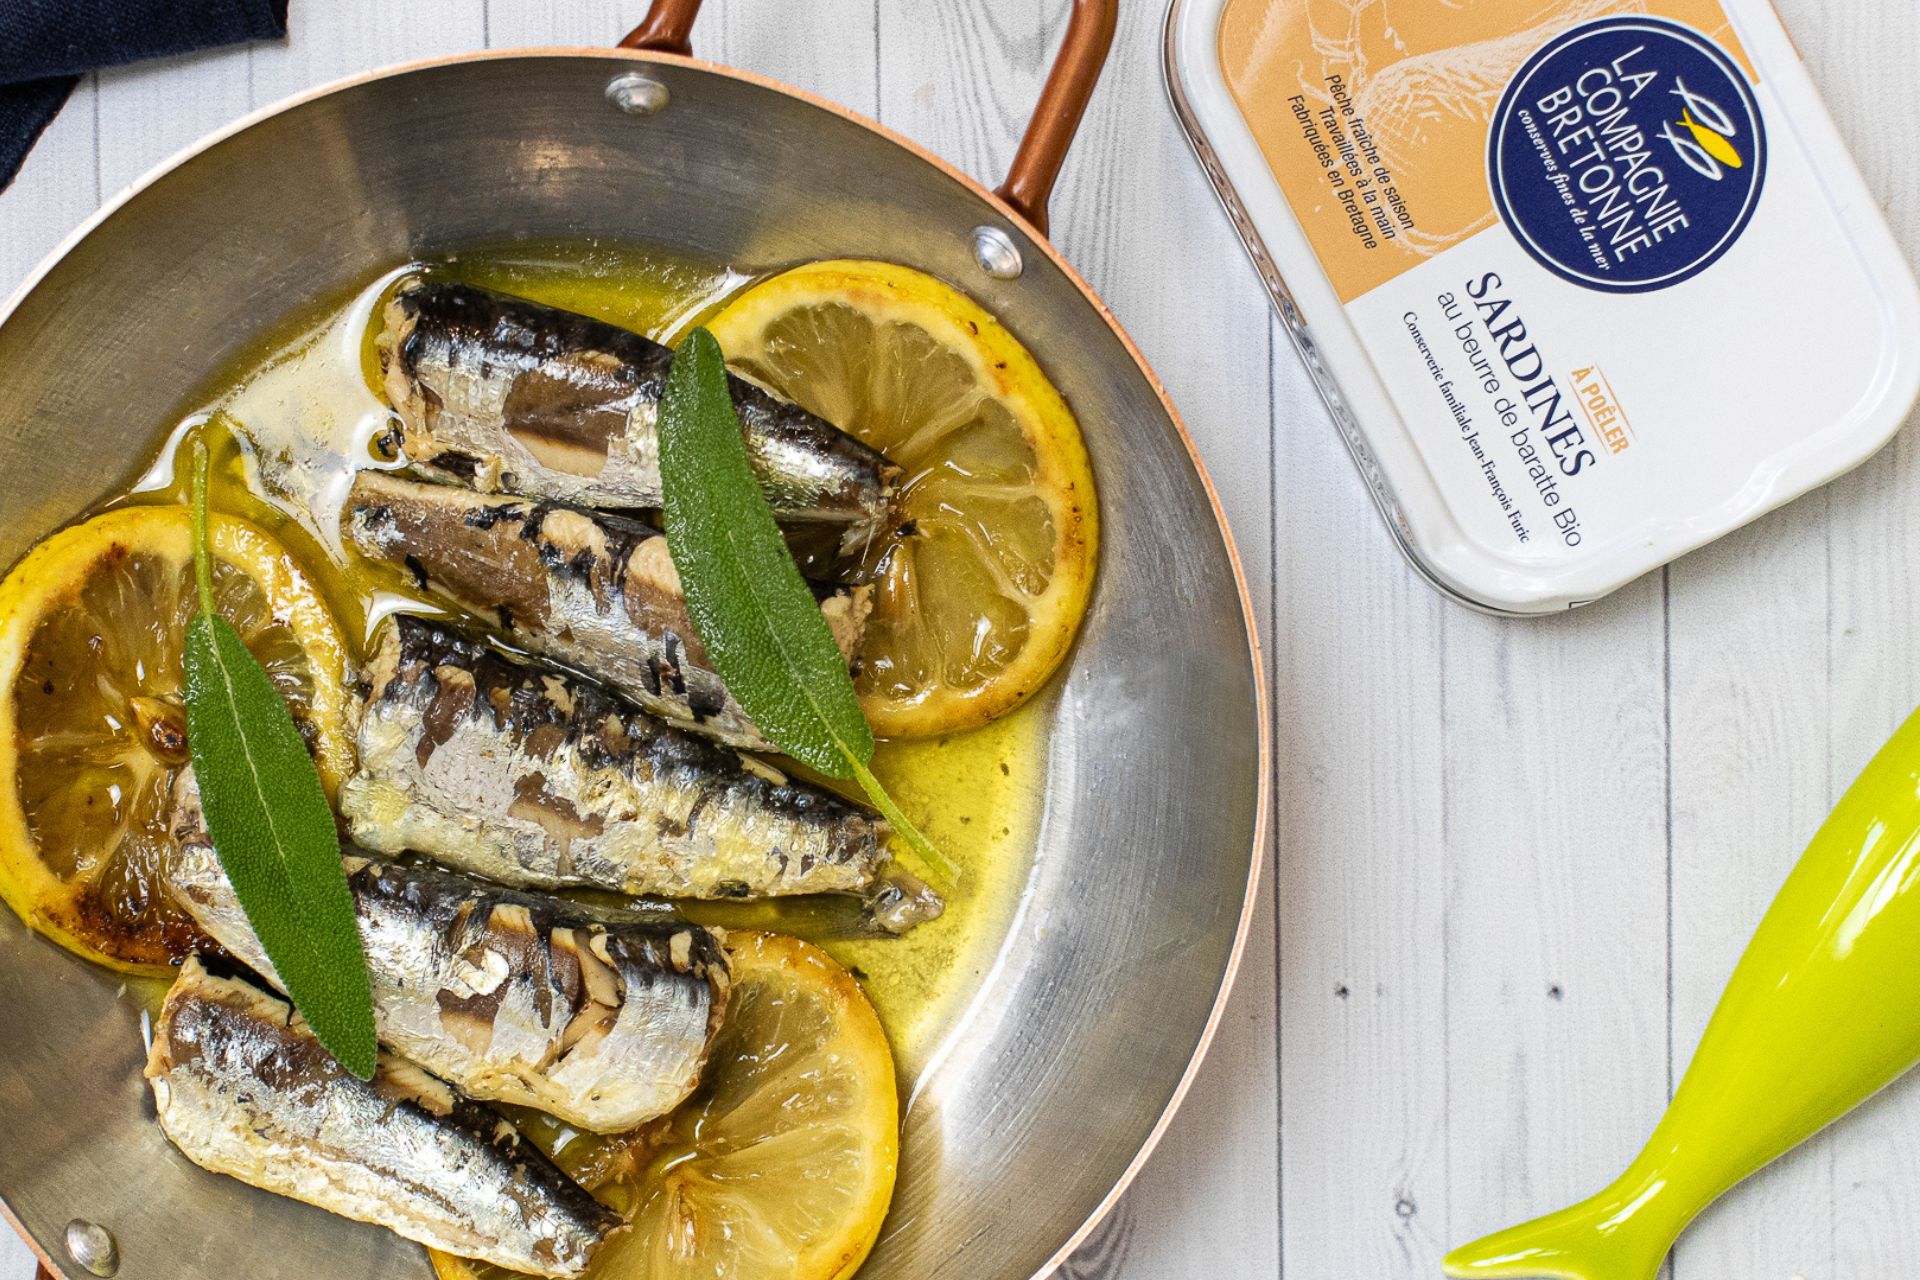 foto de uma receita de sardinhas com rodelas de limão em uma panela e uma lata de sardinha em conserva gourmet da La Compagnie Bretonne, fornecedora parceira da Fui ao Mar no Brasil